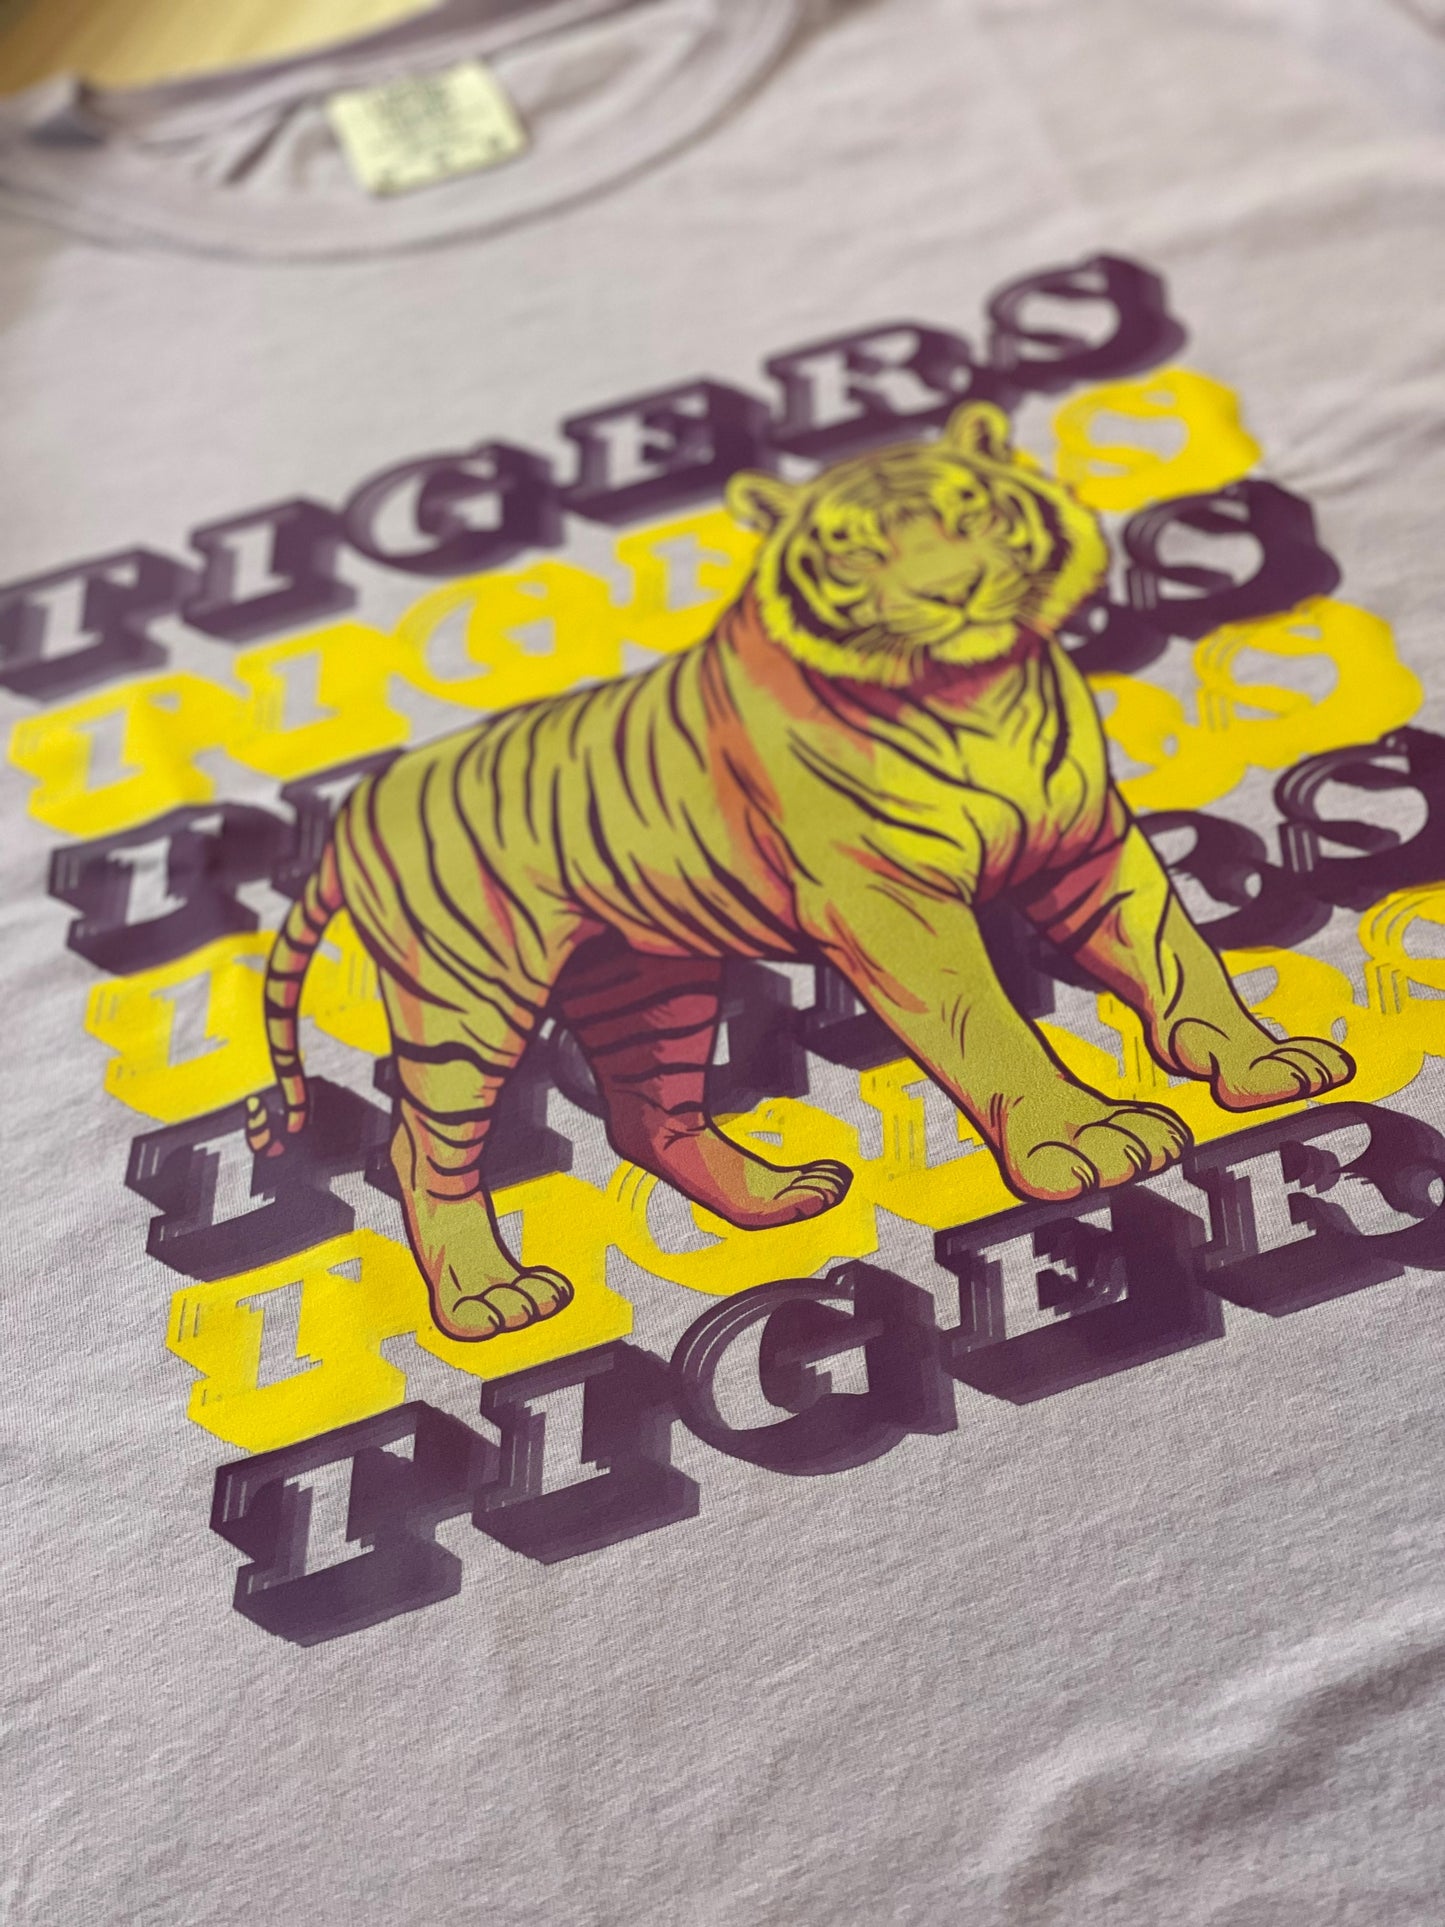 TIGERS TIGERS TIGERS T-Shirt